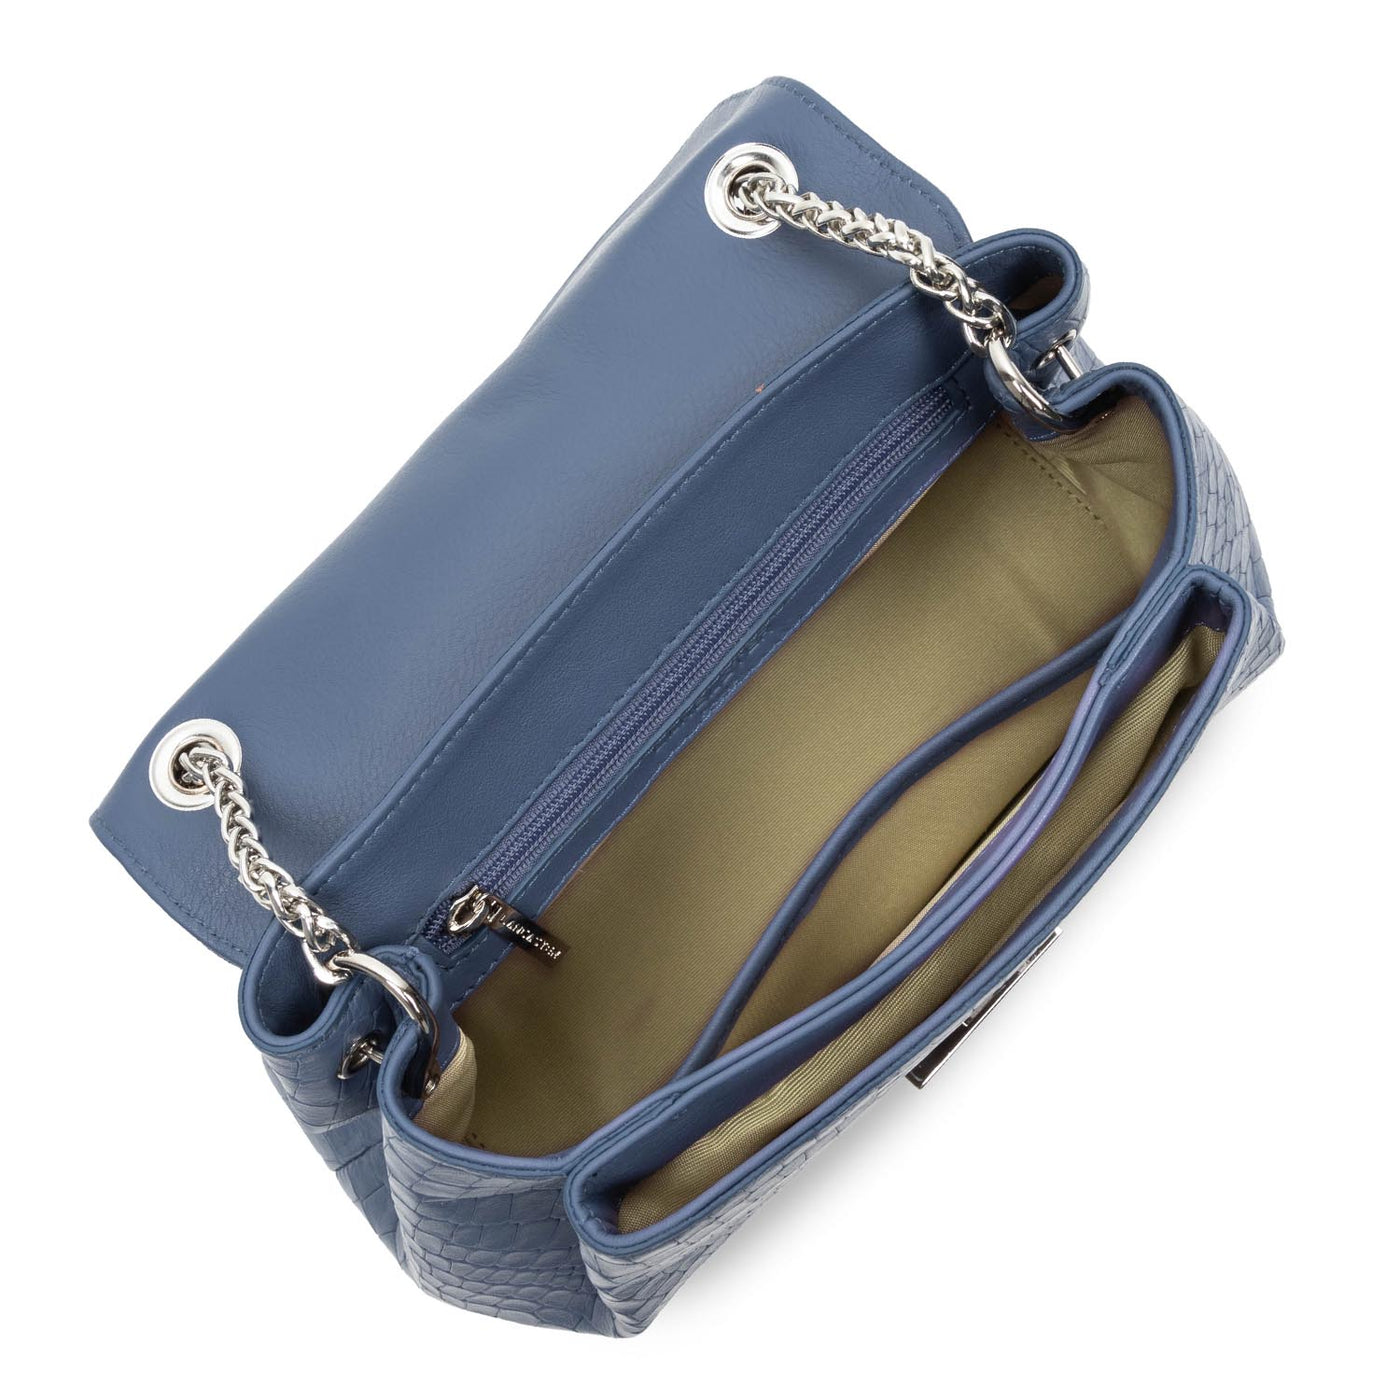 sac à main - pia #couleur_bleu-croco